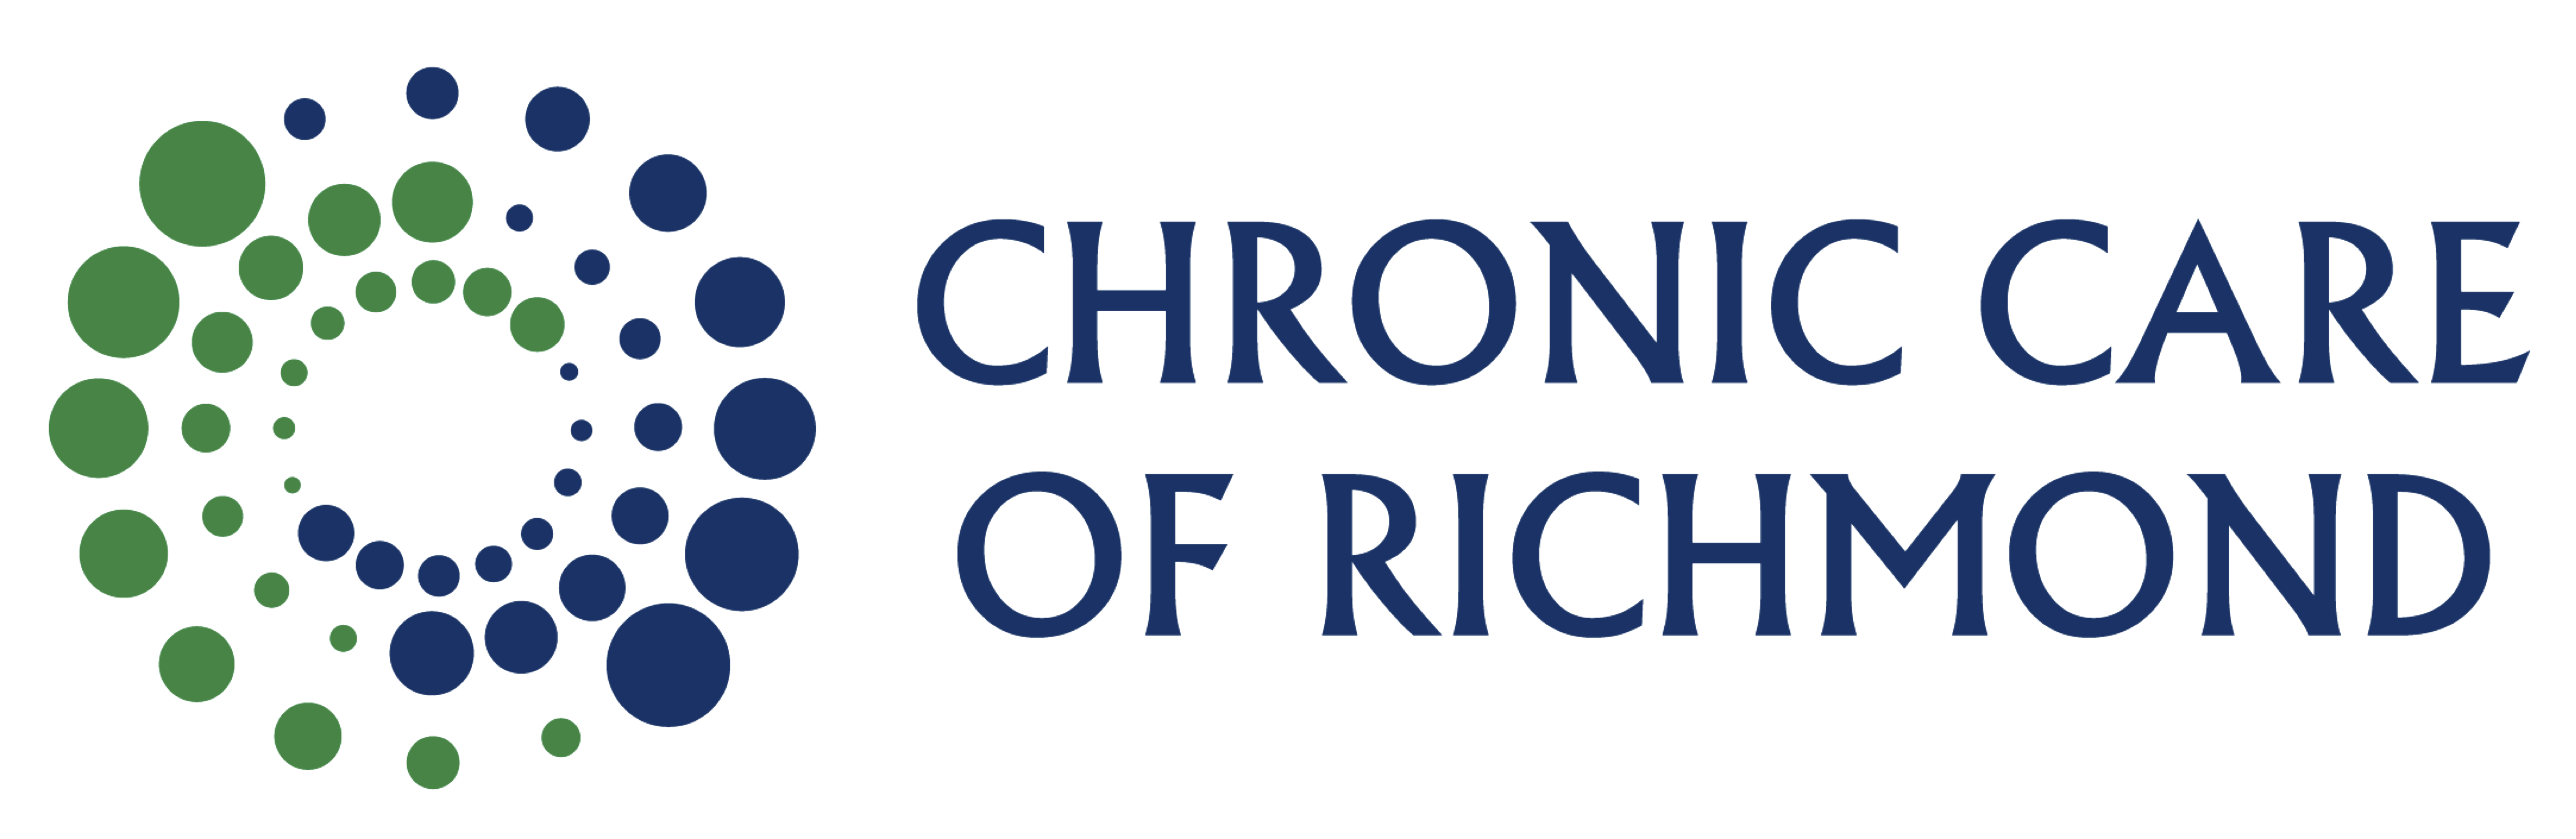 Chronic Care of Richmond